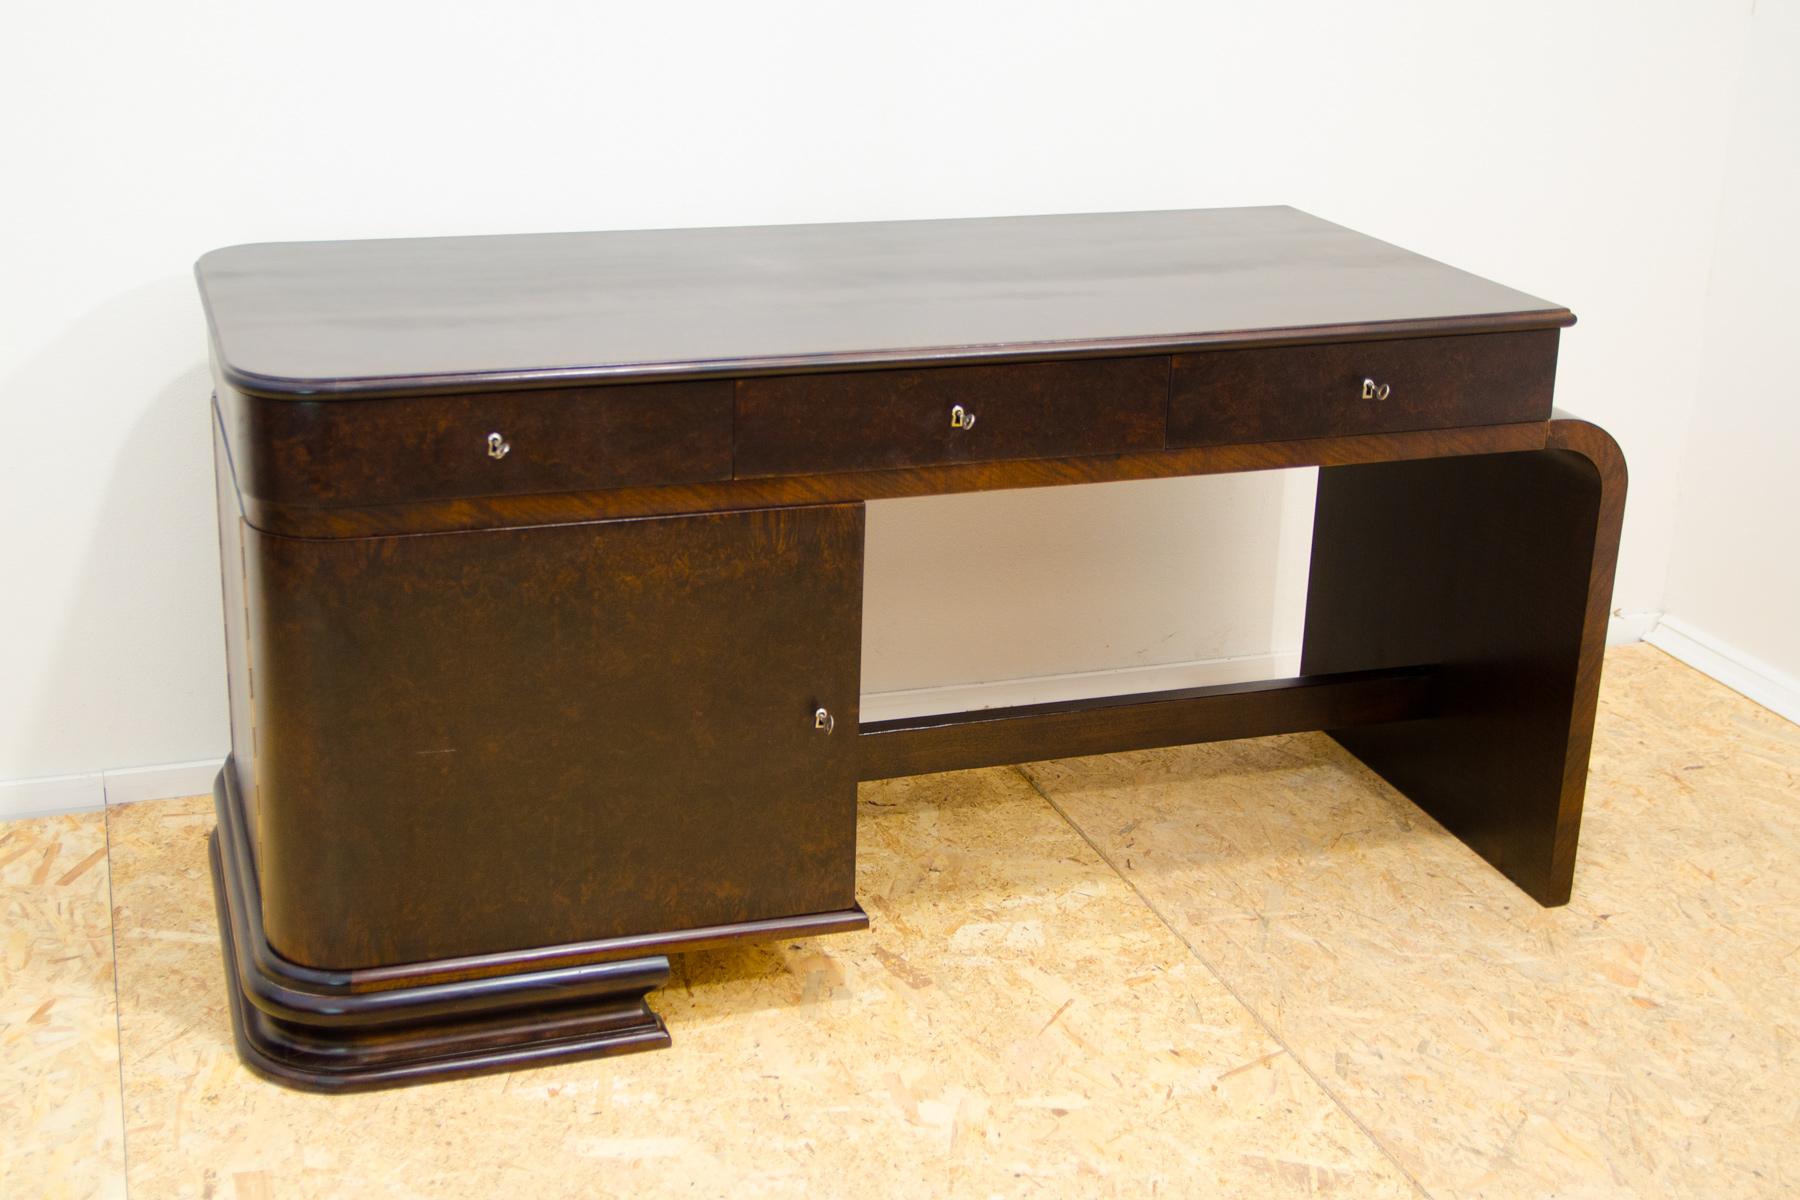 Dieser ART DECO-Schreibtisch wurde in der ehemaligen Tschechoslowakei in den 1930er Jahren hergestellt. Der Tisch hat ein einfaches und unkonventionelles Design, das typisch für die ART DECO-Zeit ist. Der Tisch ist doppelseitig, was bedeutet, dass